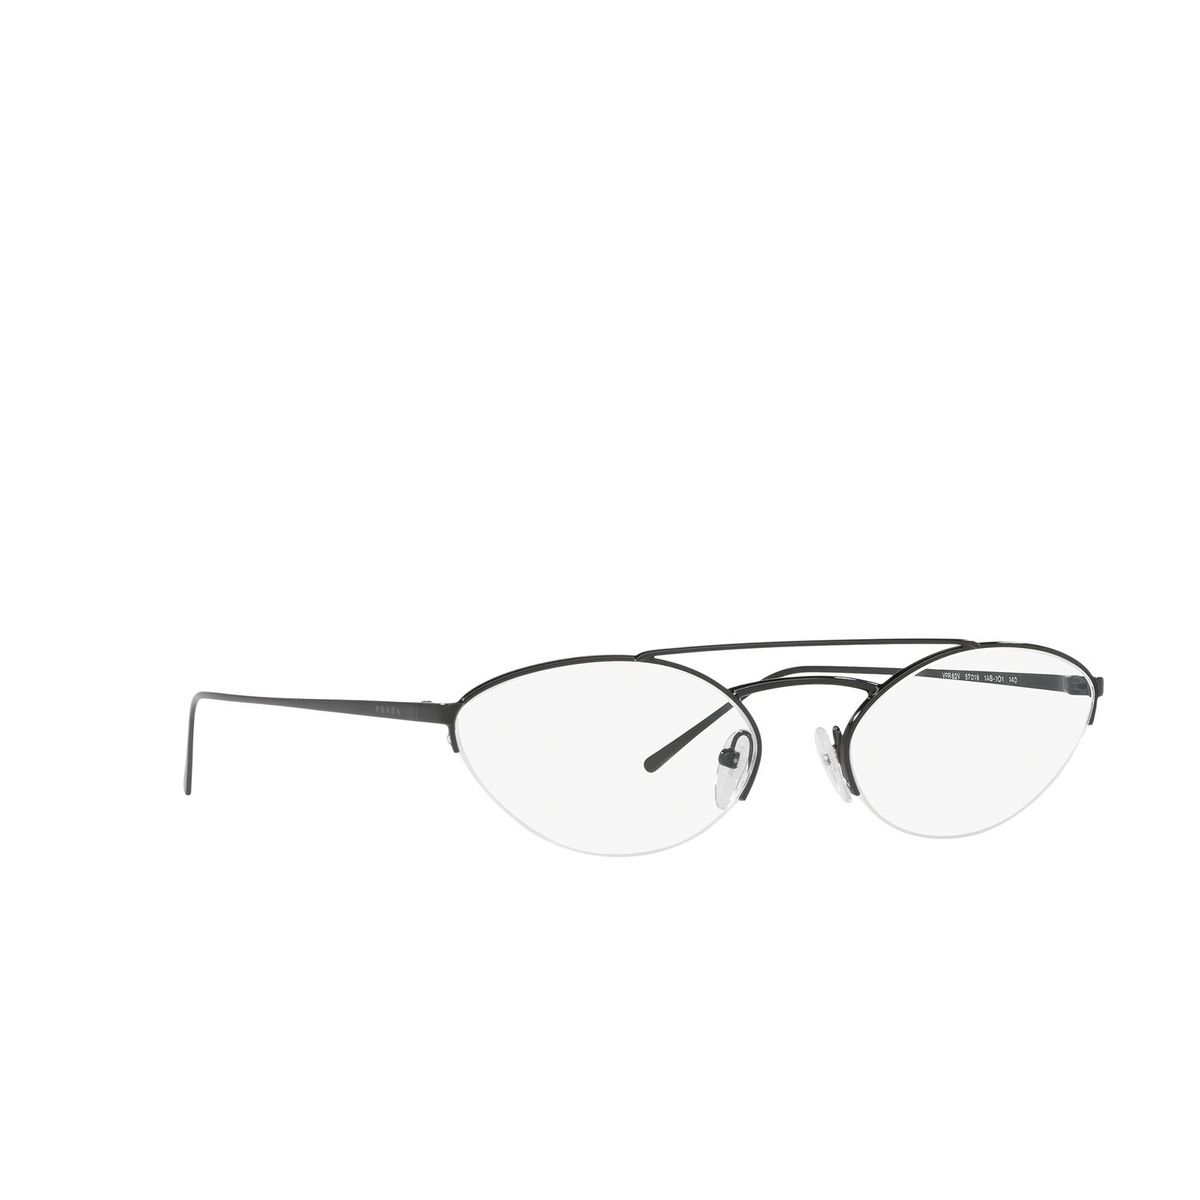 Prada® Oval Eyeglasses: Catwalk PR 62VV color Black 1AB1O1 - three-quarters view.